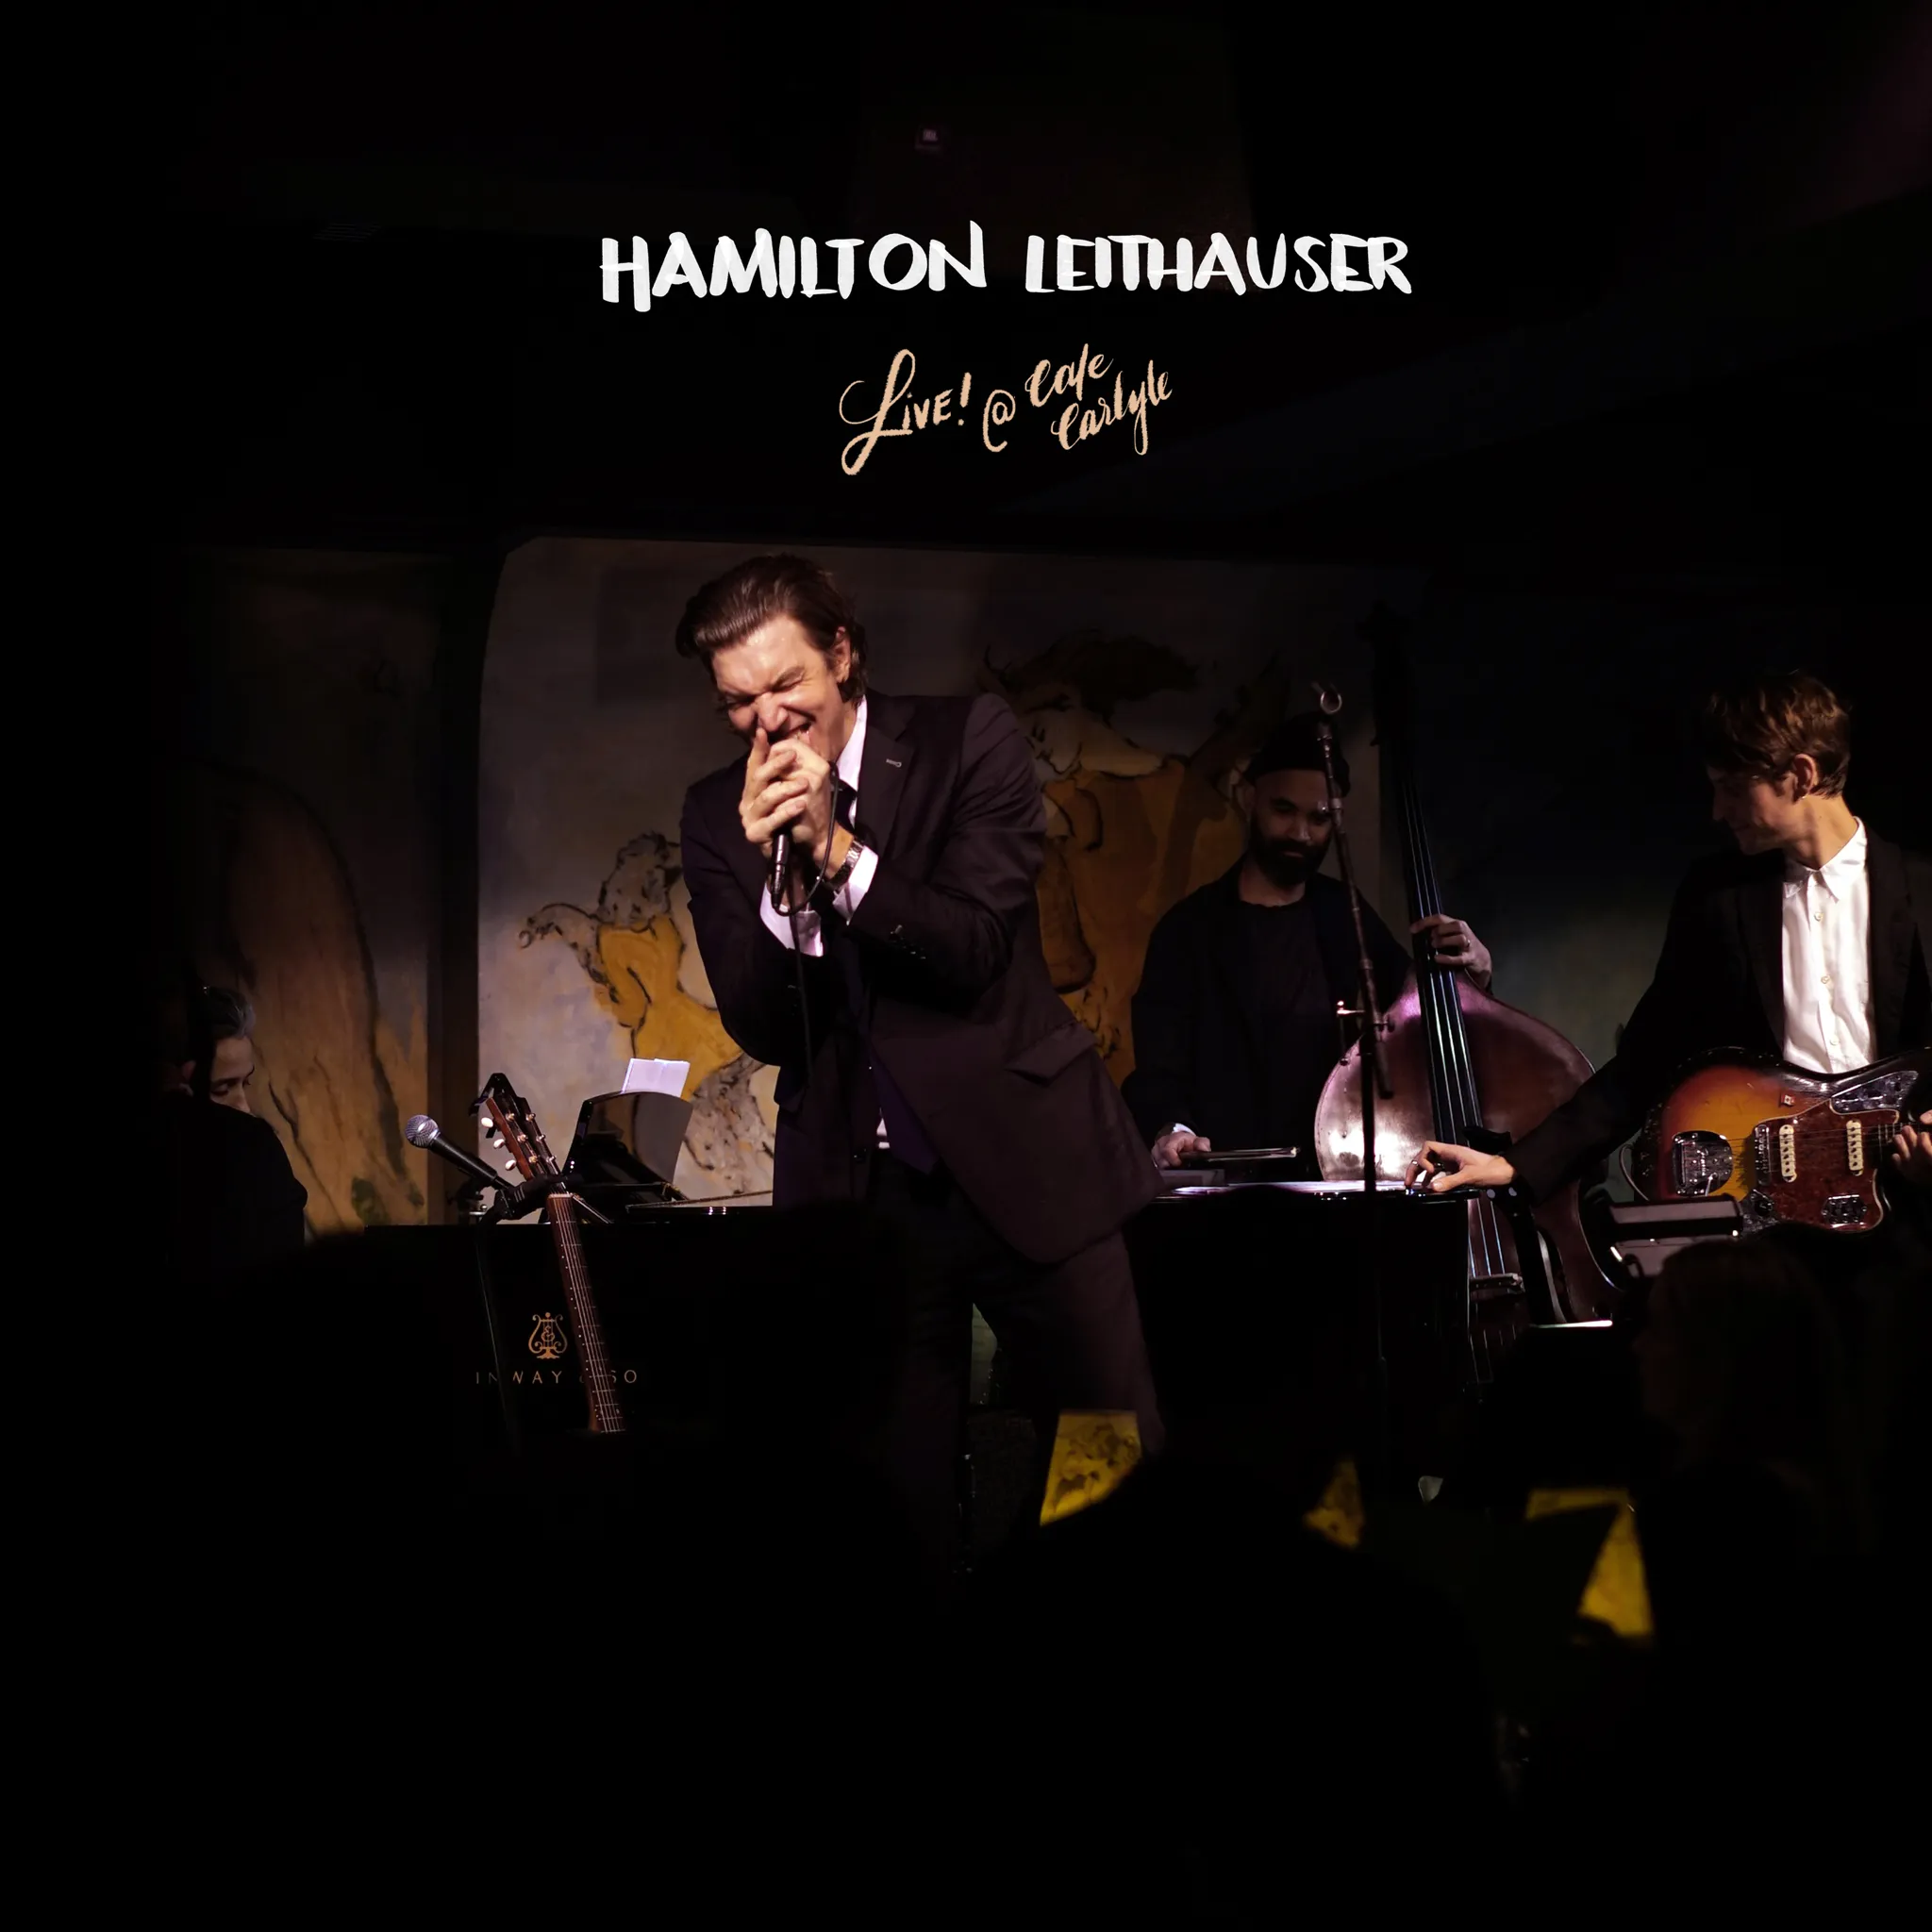 <strong>Hamilton Leithauser - Live at Cafe Carlye</strong> (Vinyl LP - white)